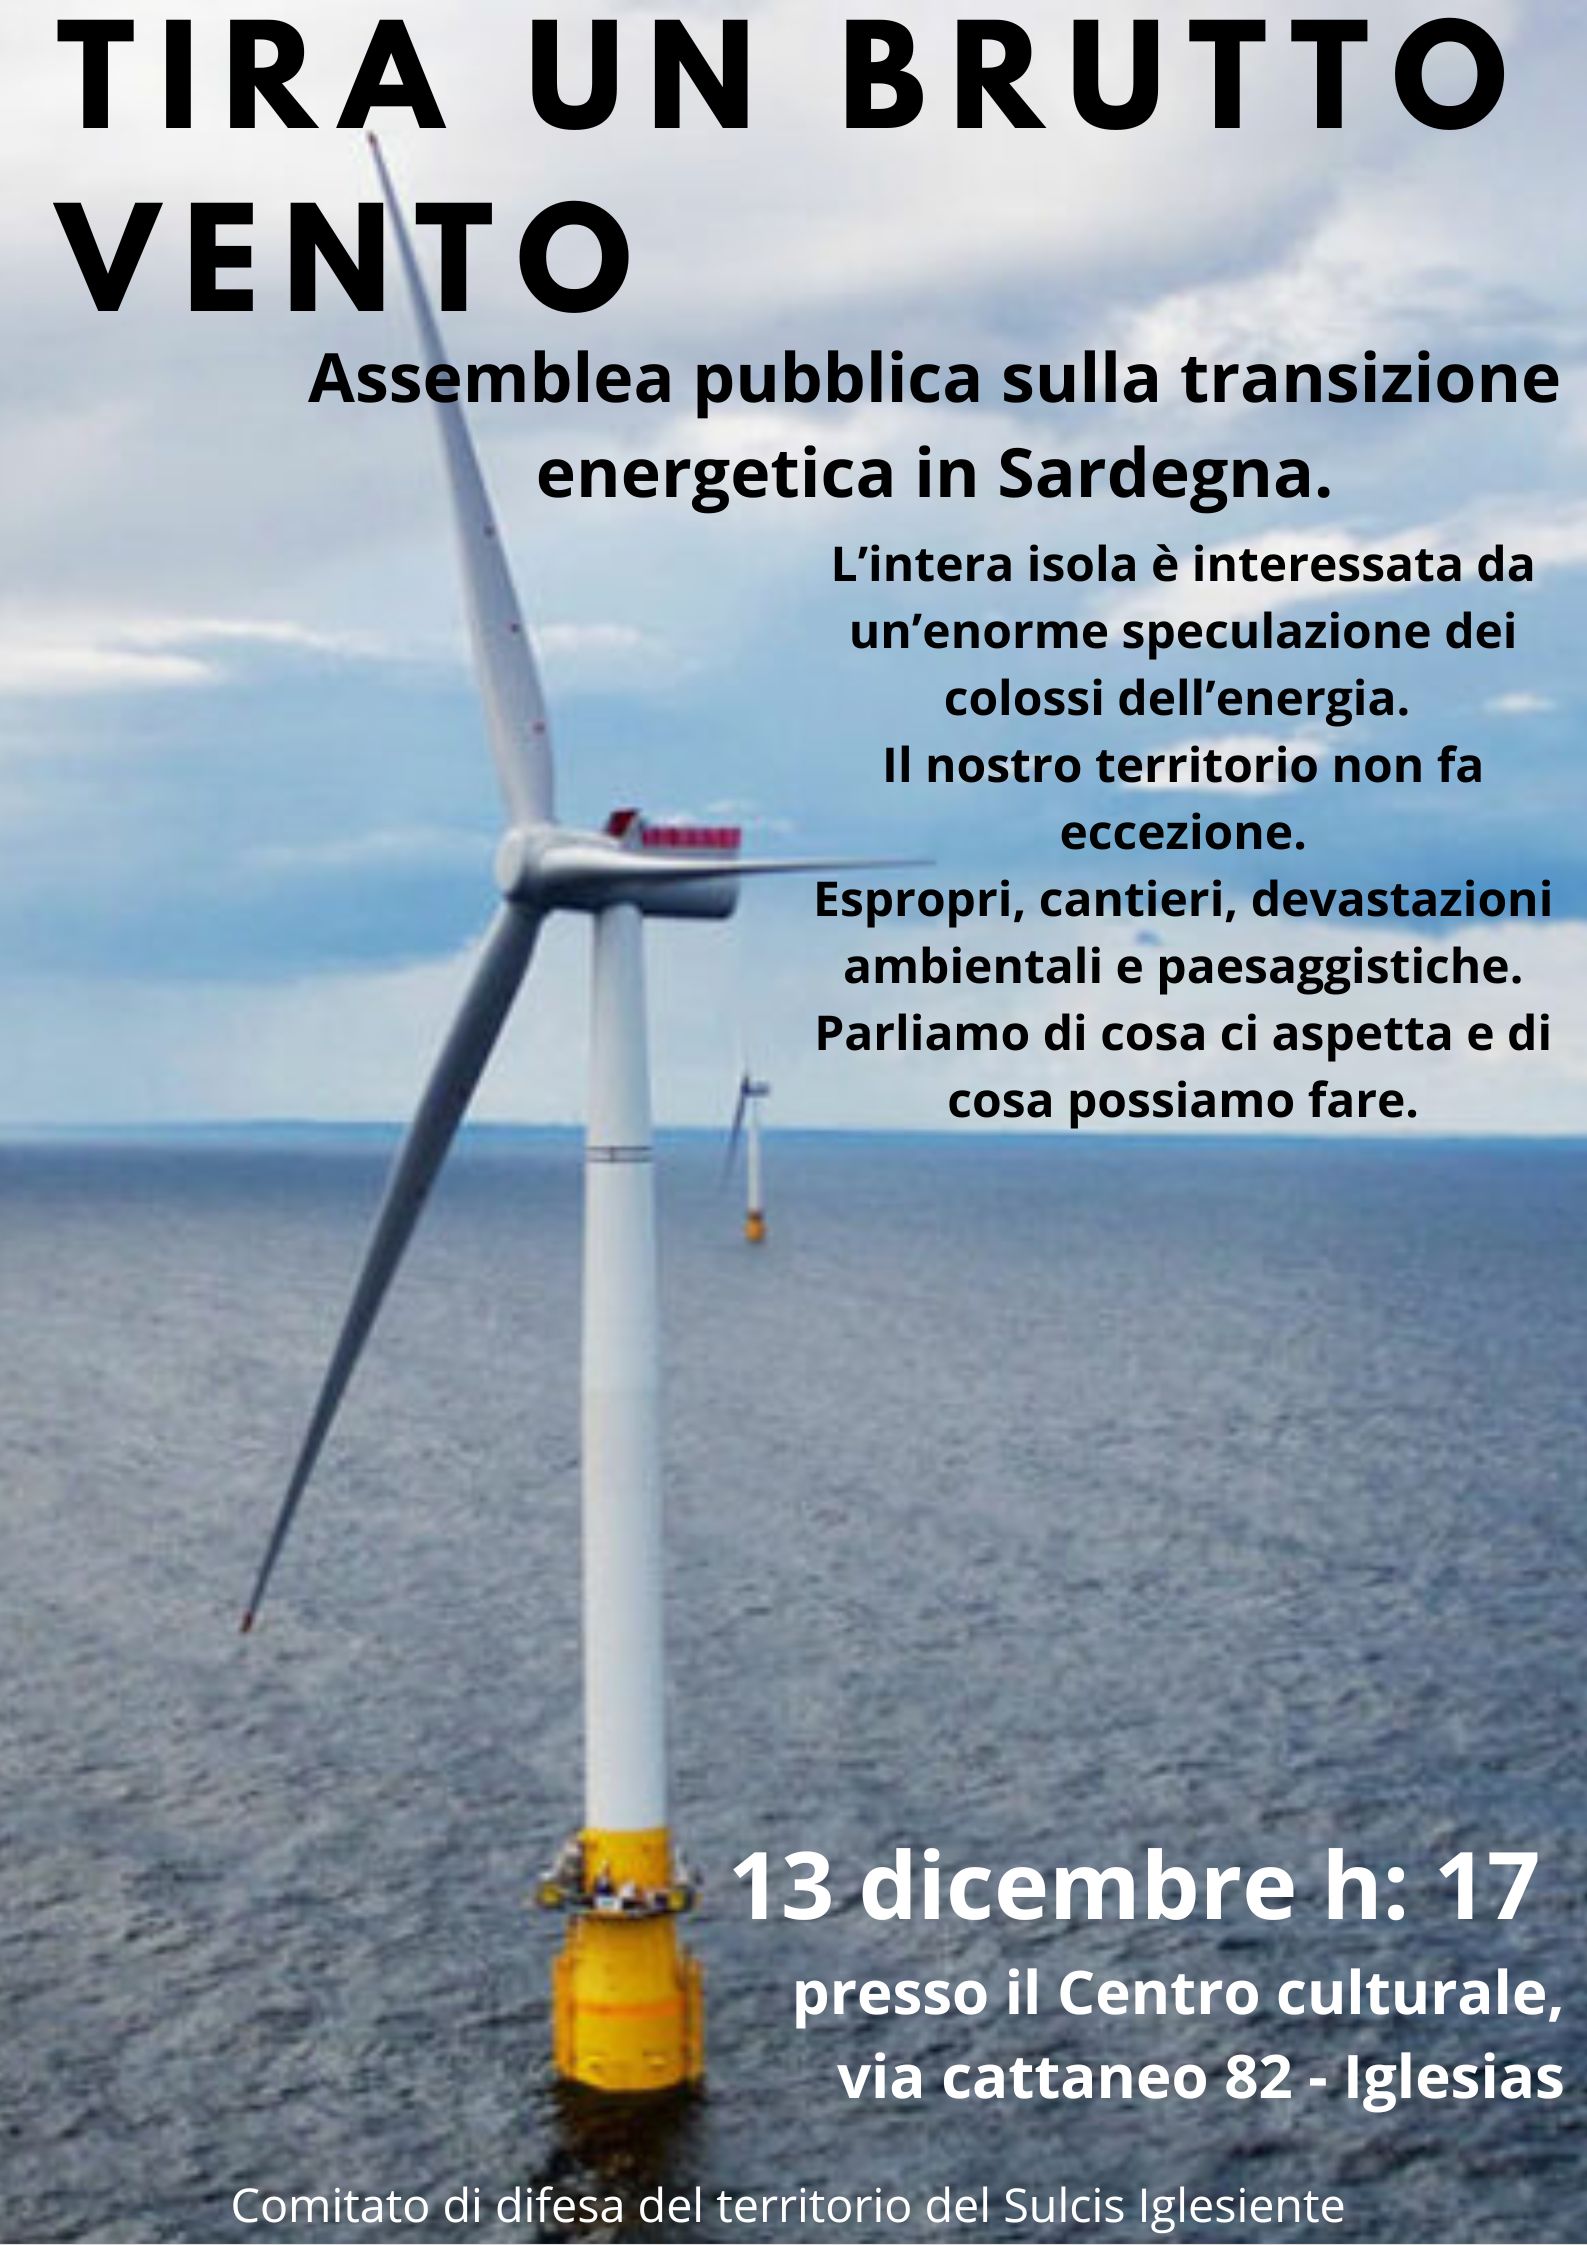 Contributo per l’assemblea pubblica sulla transizione energetica 13 dicembre – Iglesias